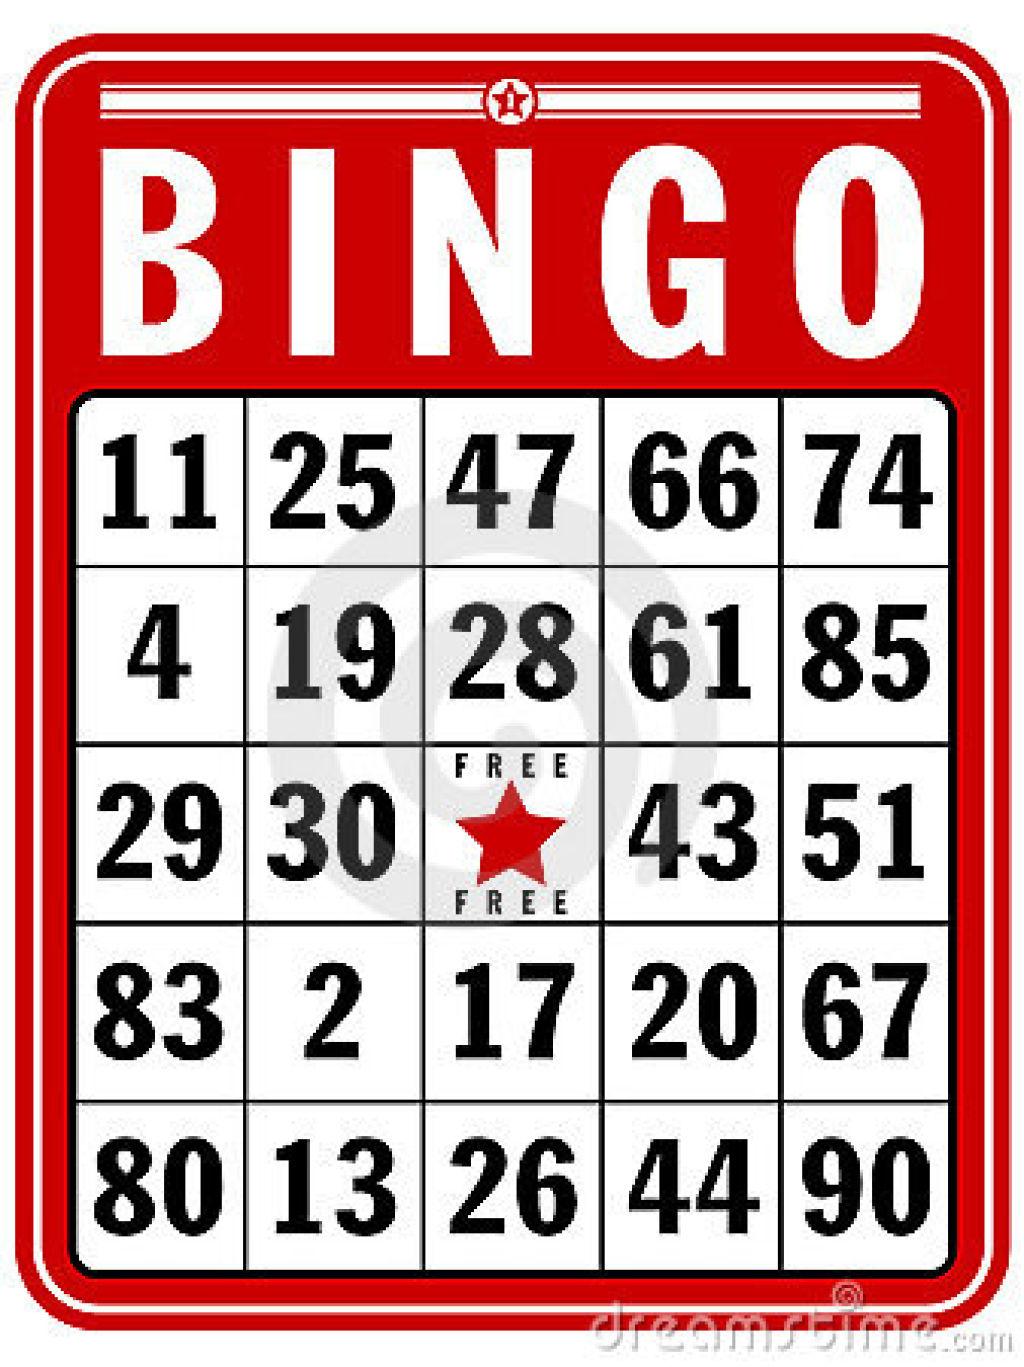 Bingo at prairie band casino hotel